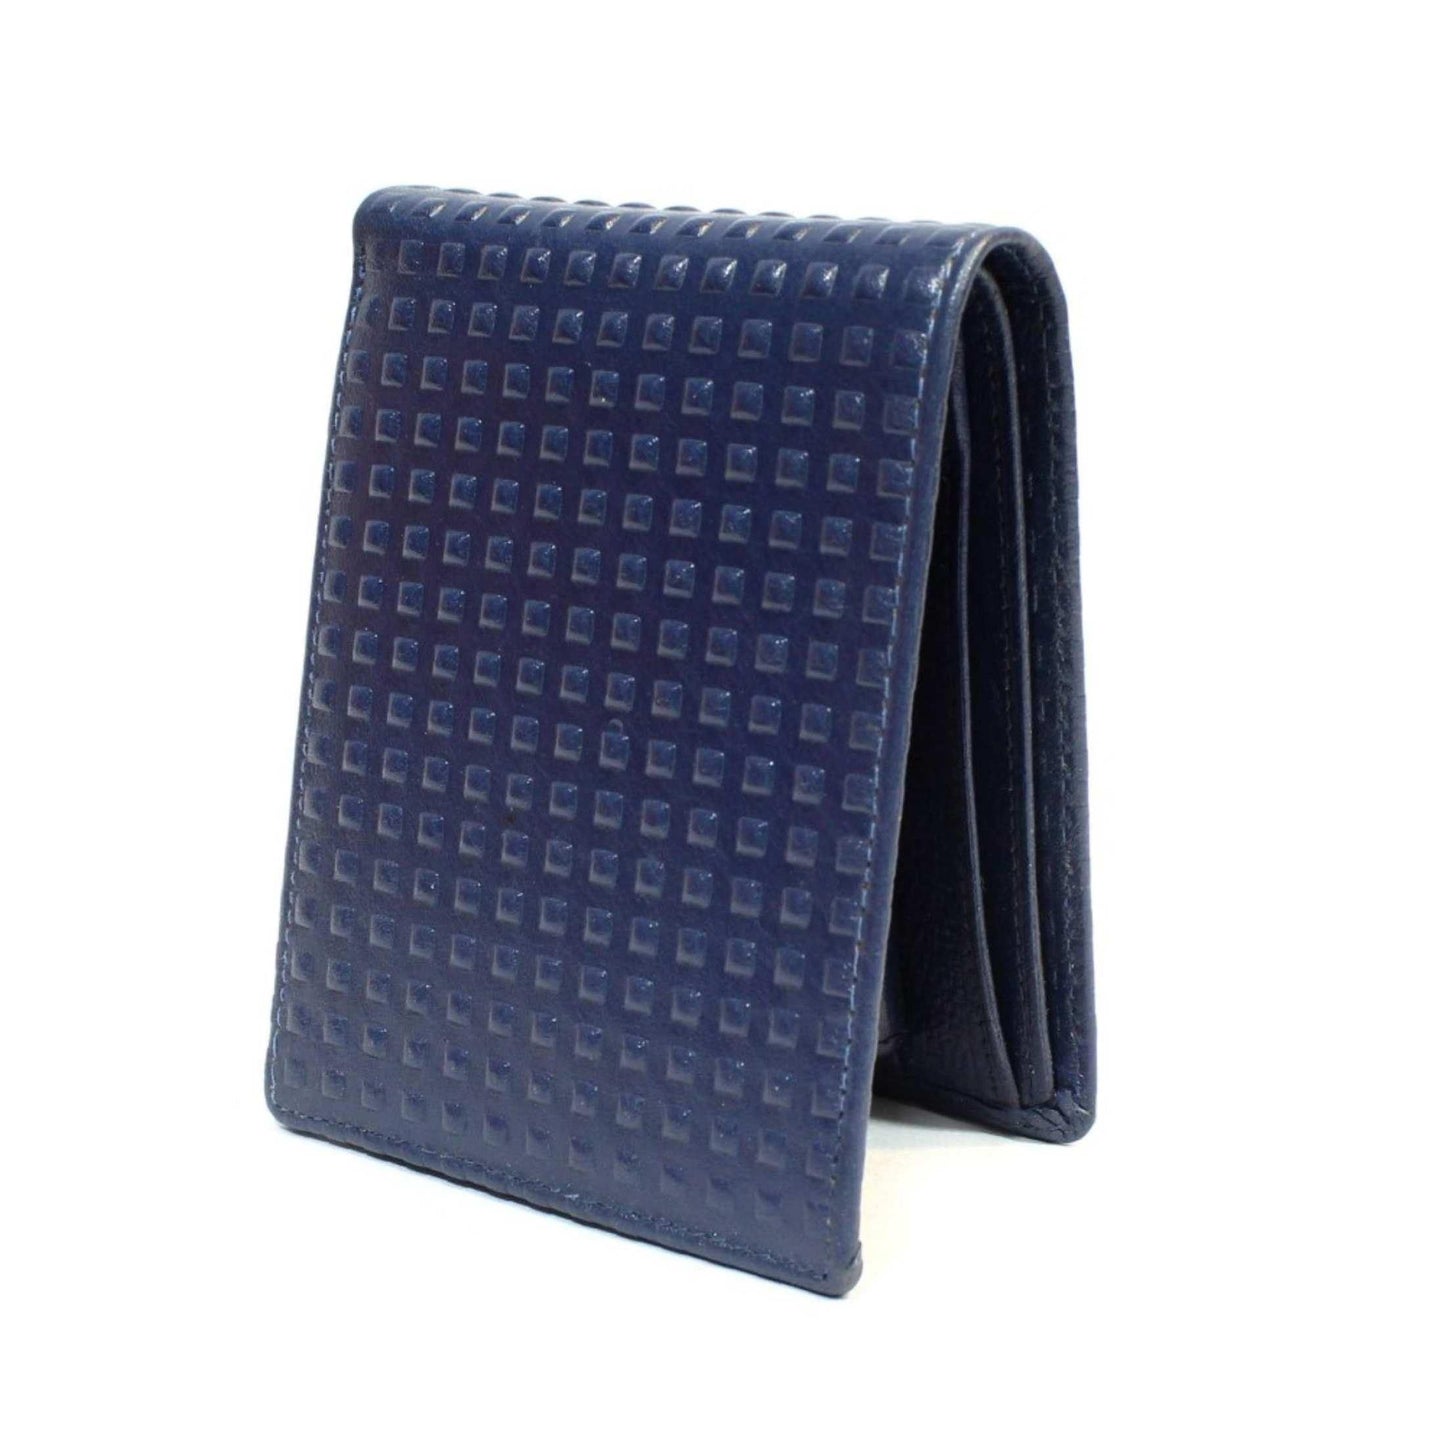 2 Folding Blue Dotted Wallet For Men